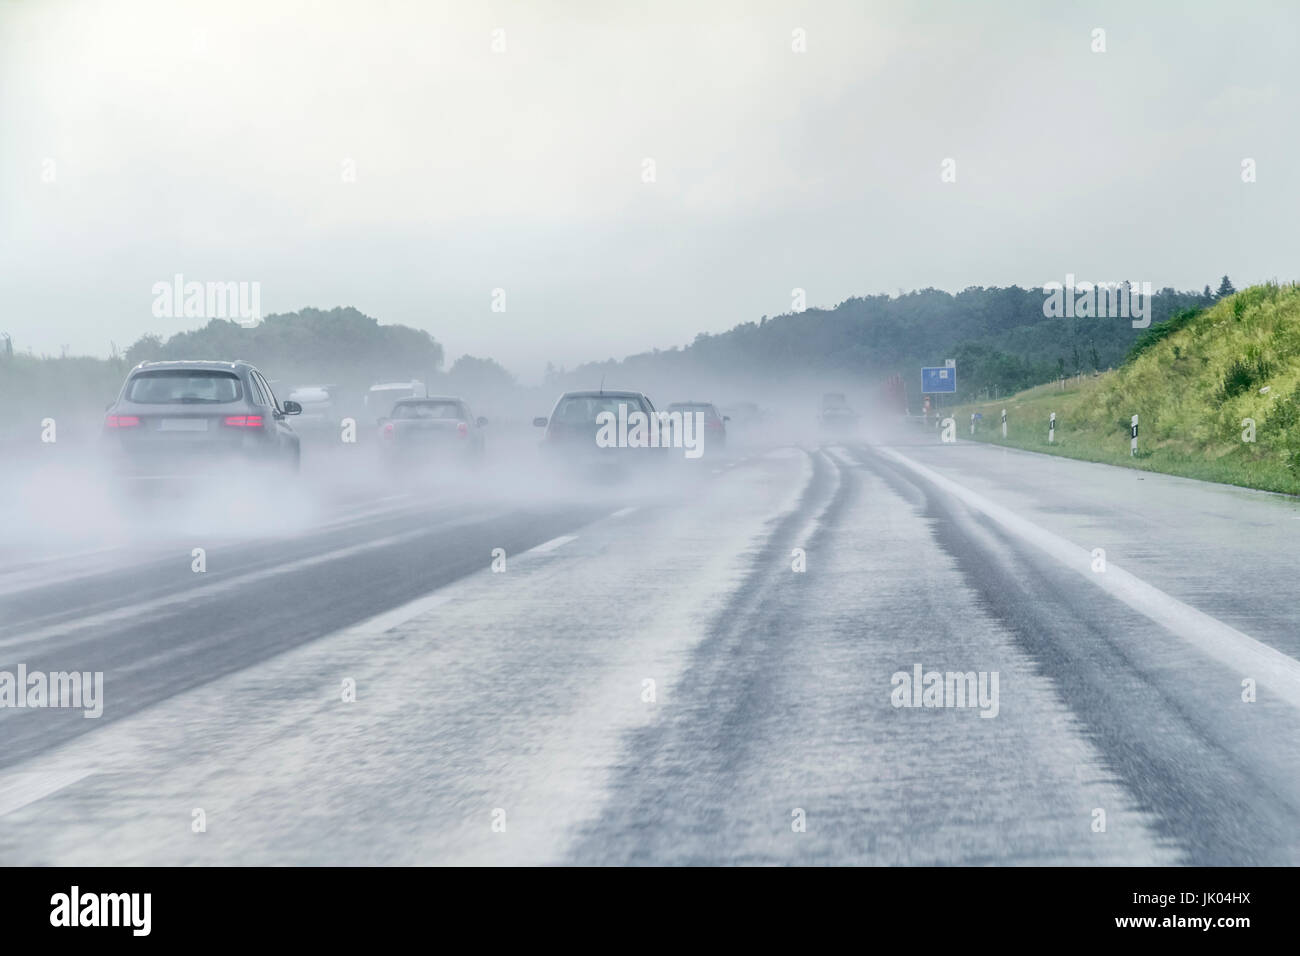 Paisaje de carretera húmeda y lluviosa en una carretera en el sur de Alemania Foto de stock